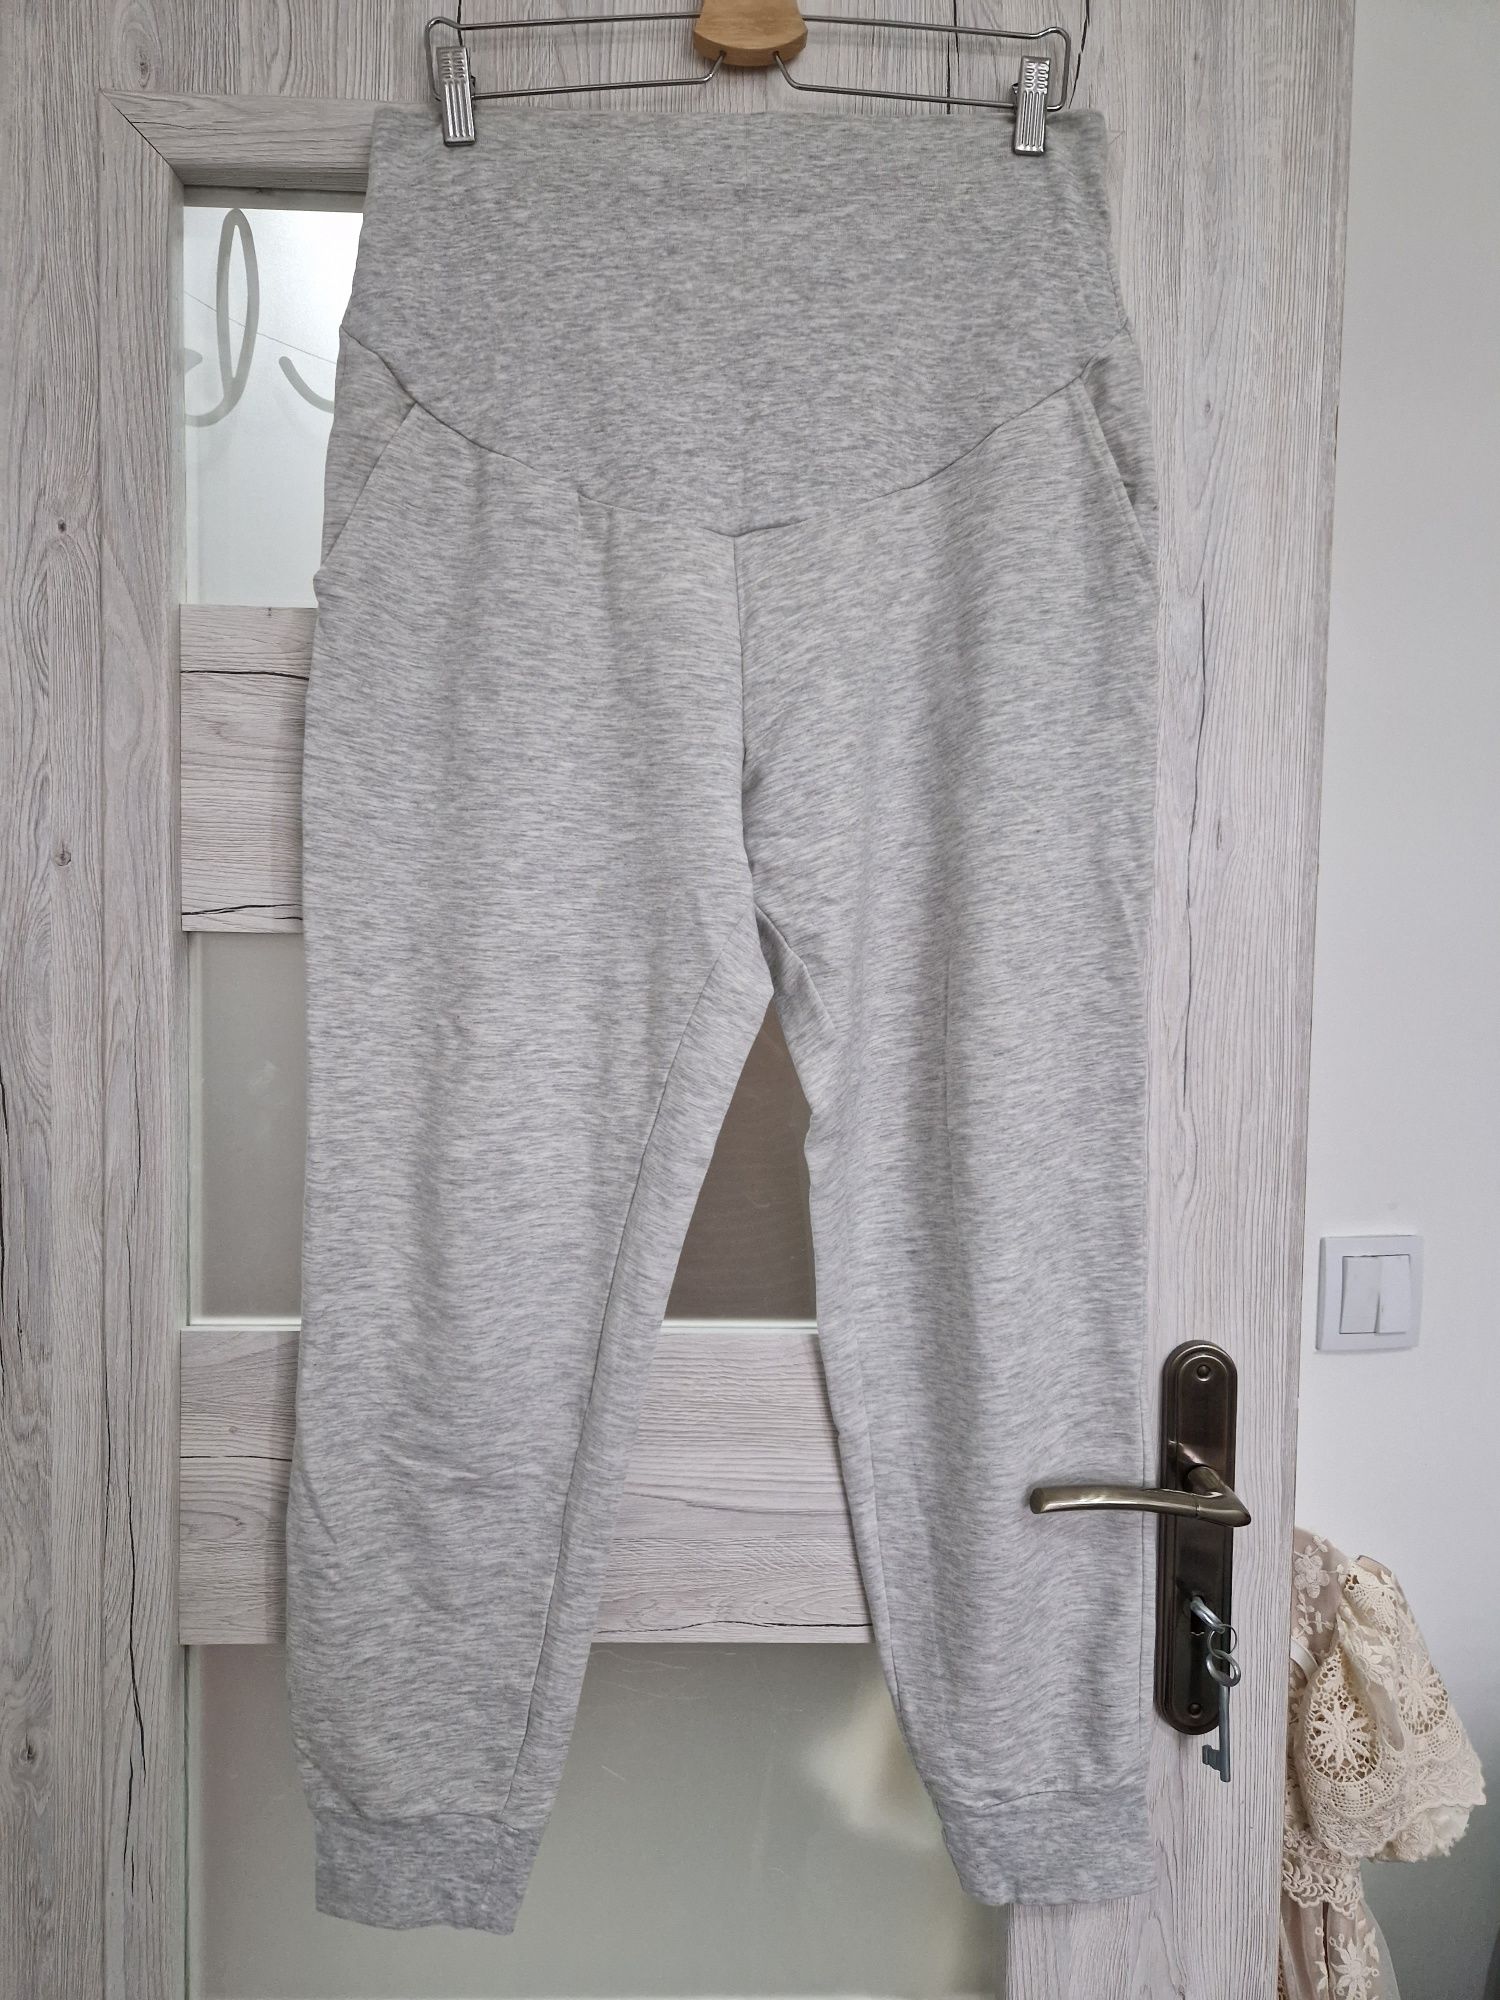 Spodnie dresowe damskie ciążowe ciąża L H&M szare siwe joggersy